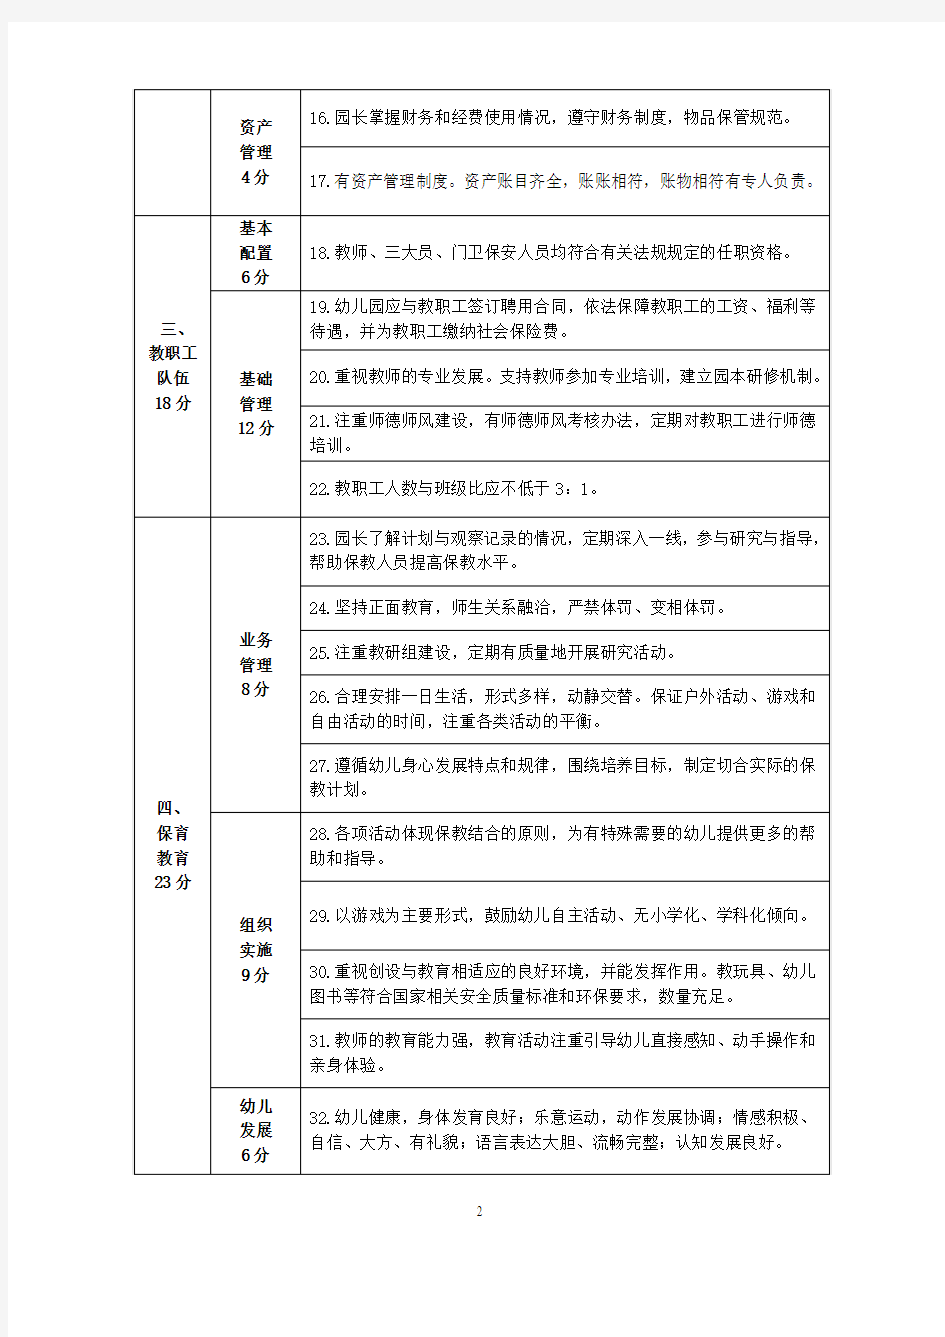 松江区 2019 年民办二级三类幼儿园办园行为督导评估指南